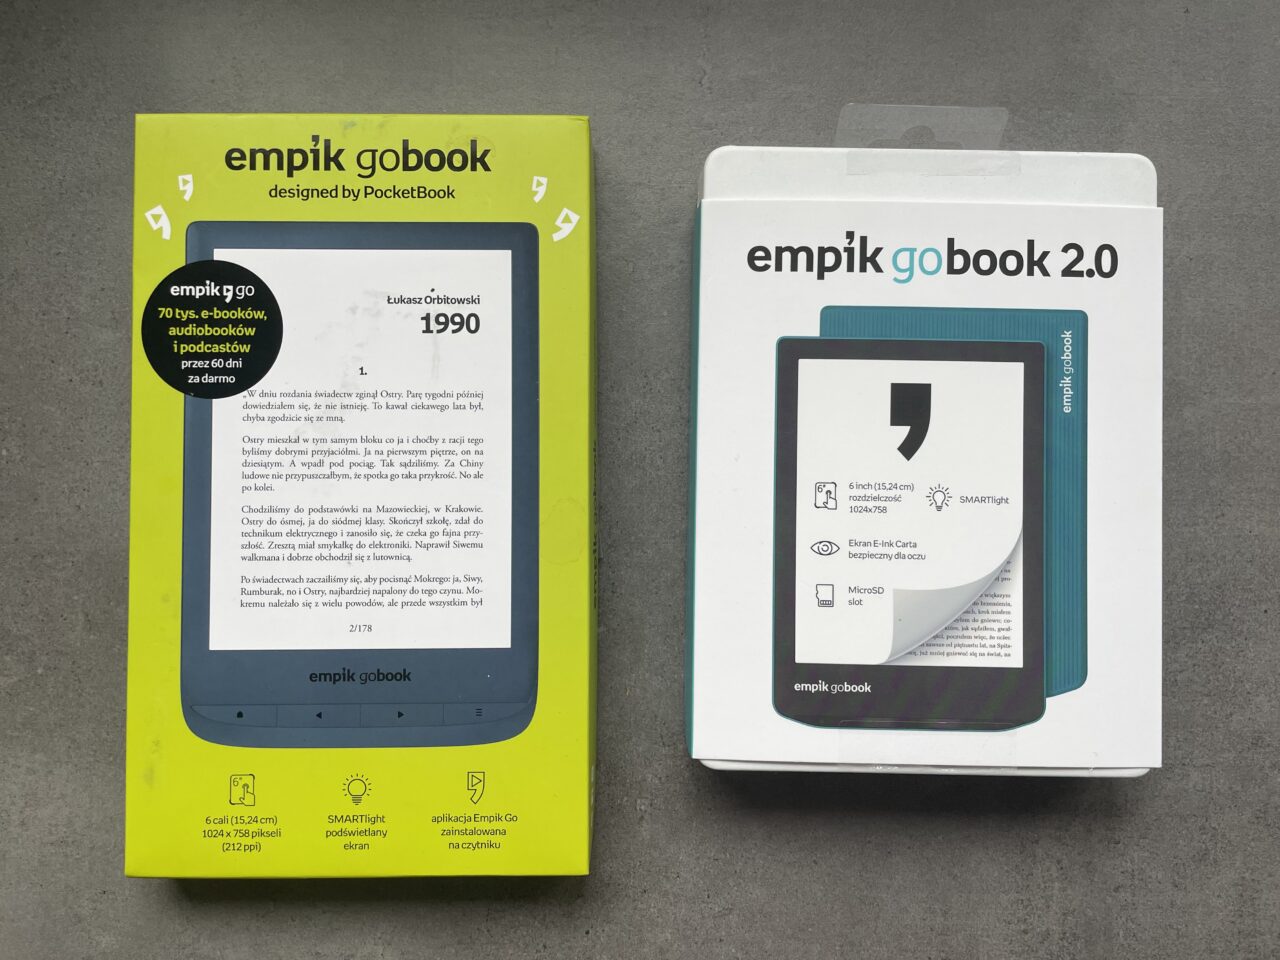 Opakowania dwóch czytników e-booków Empik GoBook i Empik GoBook 2.0 ułożone na szarym tle.